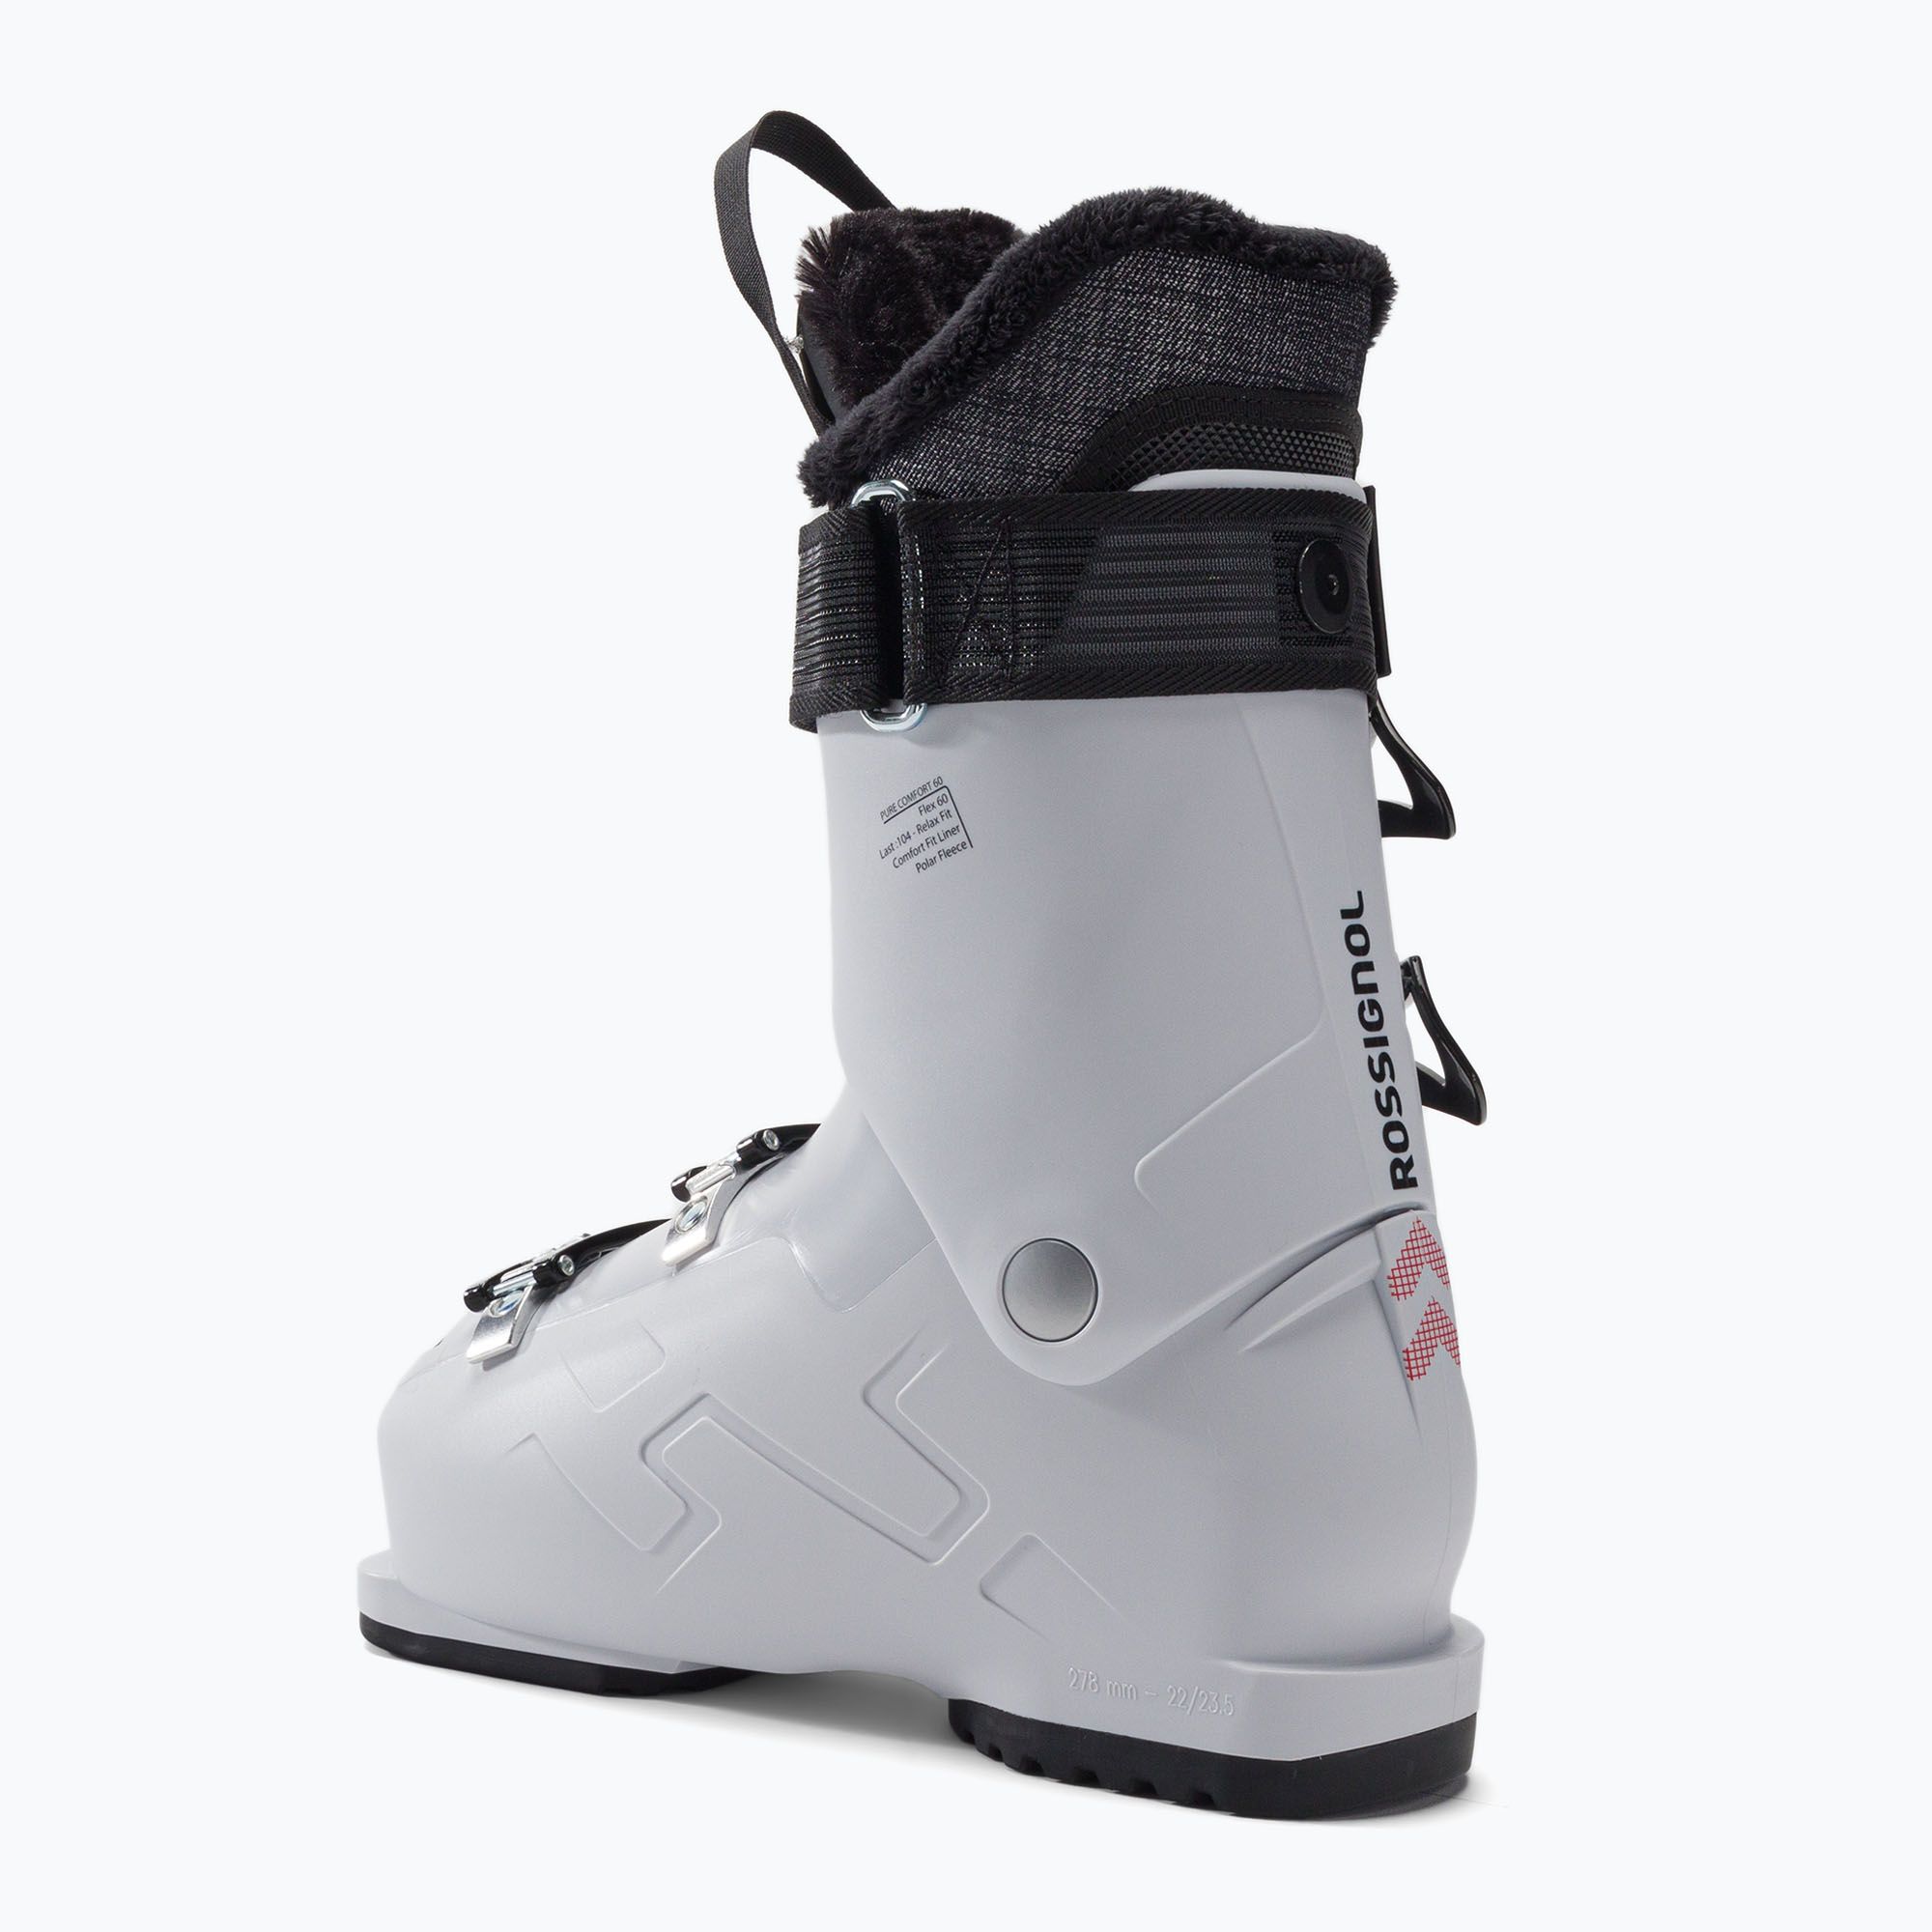 Buty narciarskie damskie Rossignol Pure Comfort 60 2022 white/grey zdjęcie nr 2